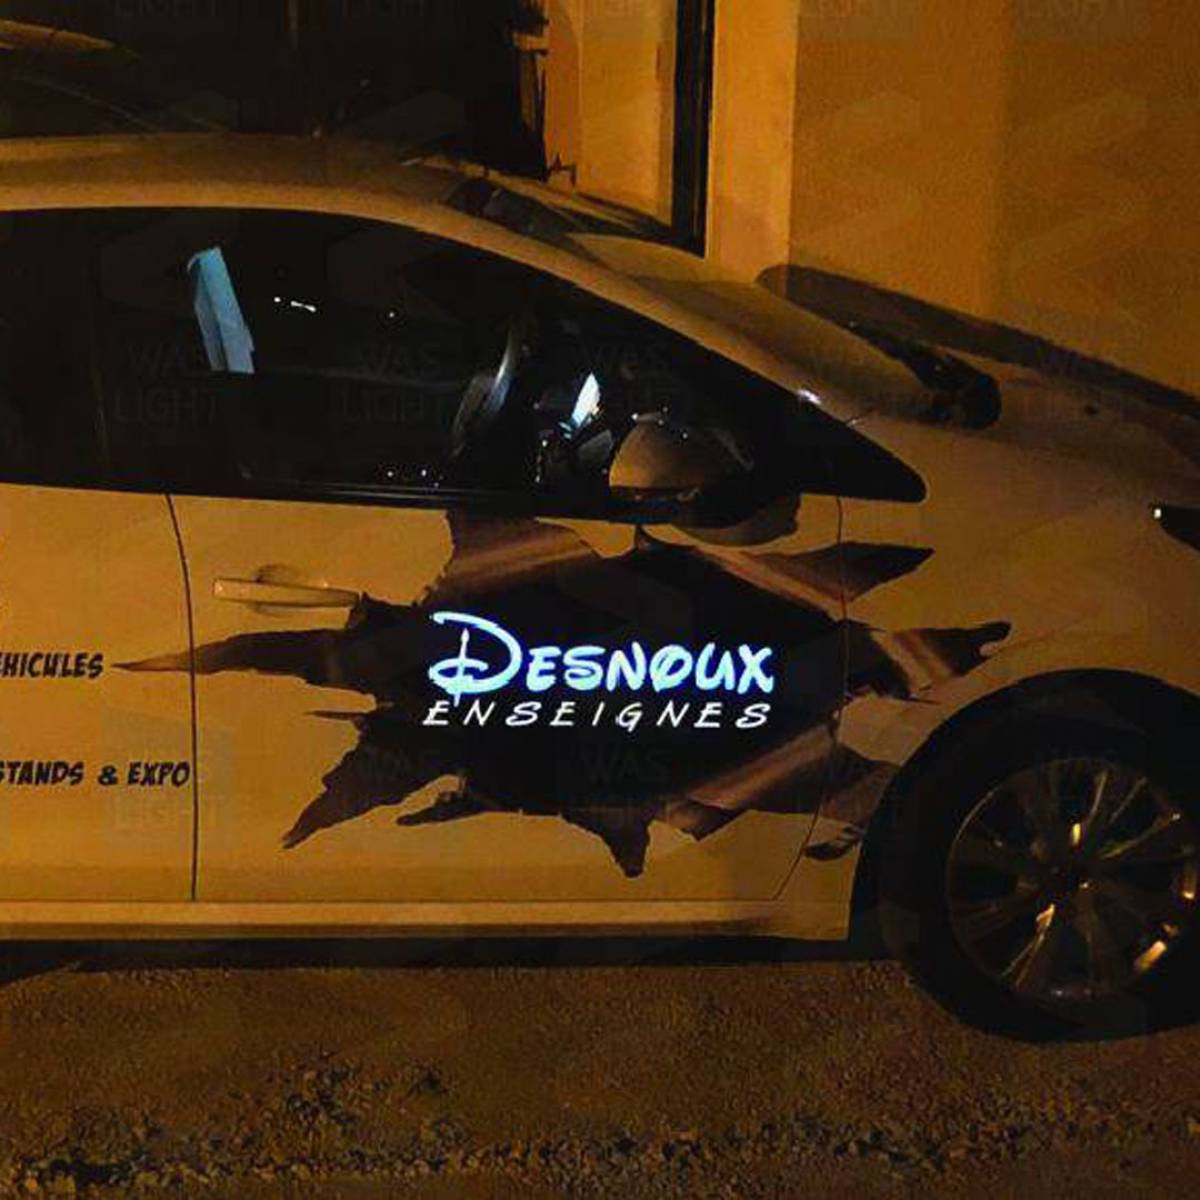 Covering électroluminescent voiture Peugeot Desnoux Enseignes Annecy